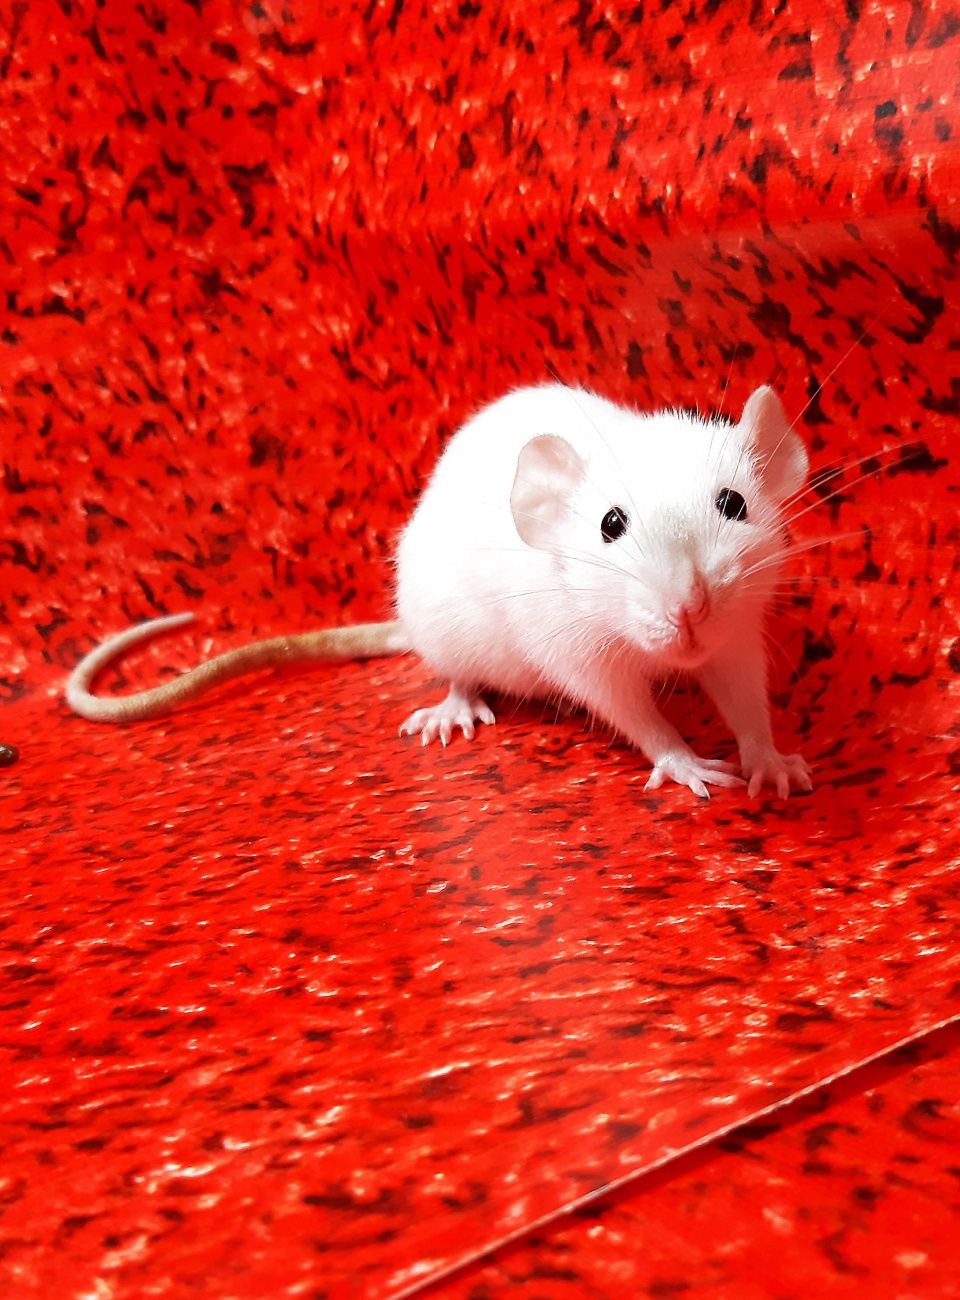 Крысы дамбо,крыски,крысята,клетки,корма,аксессуары